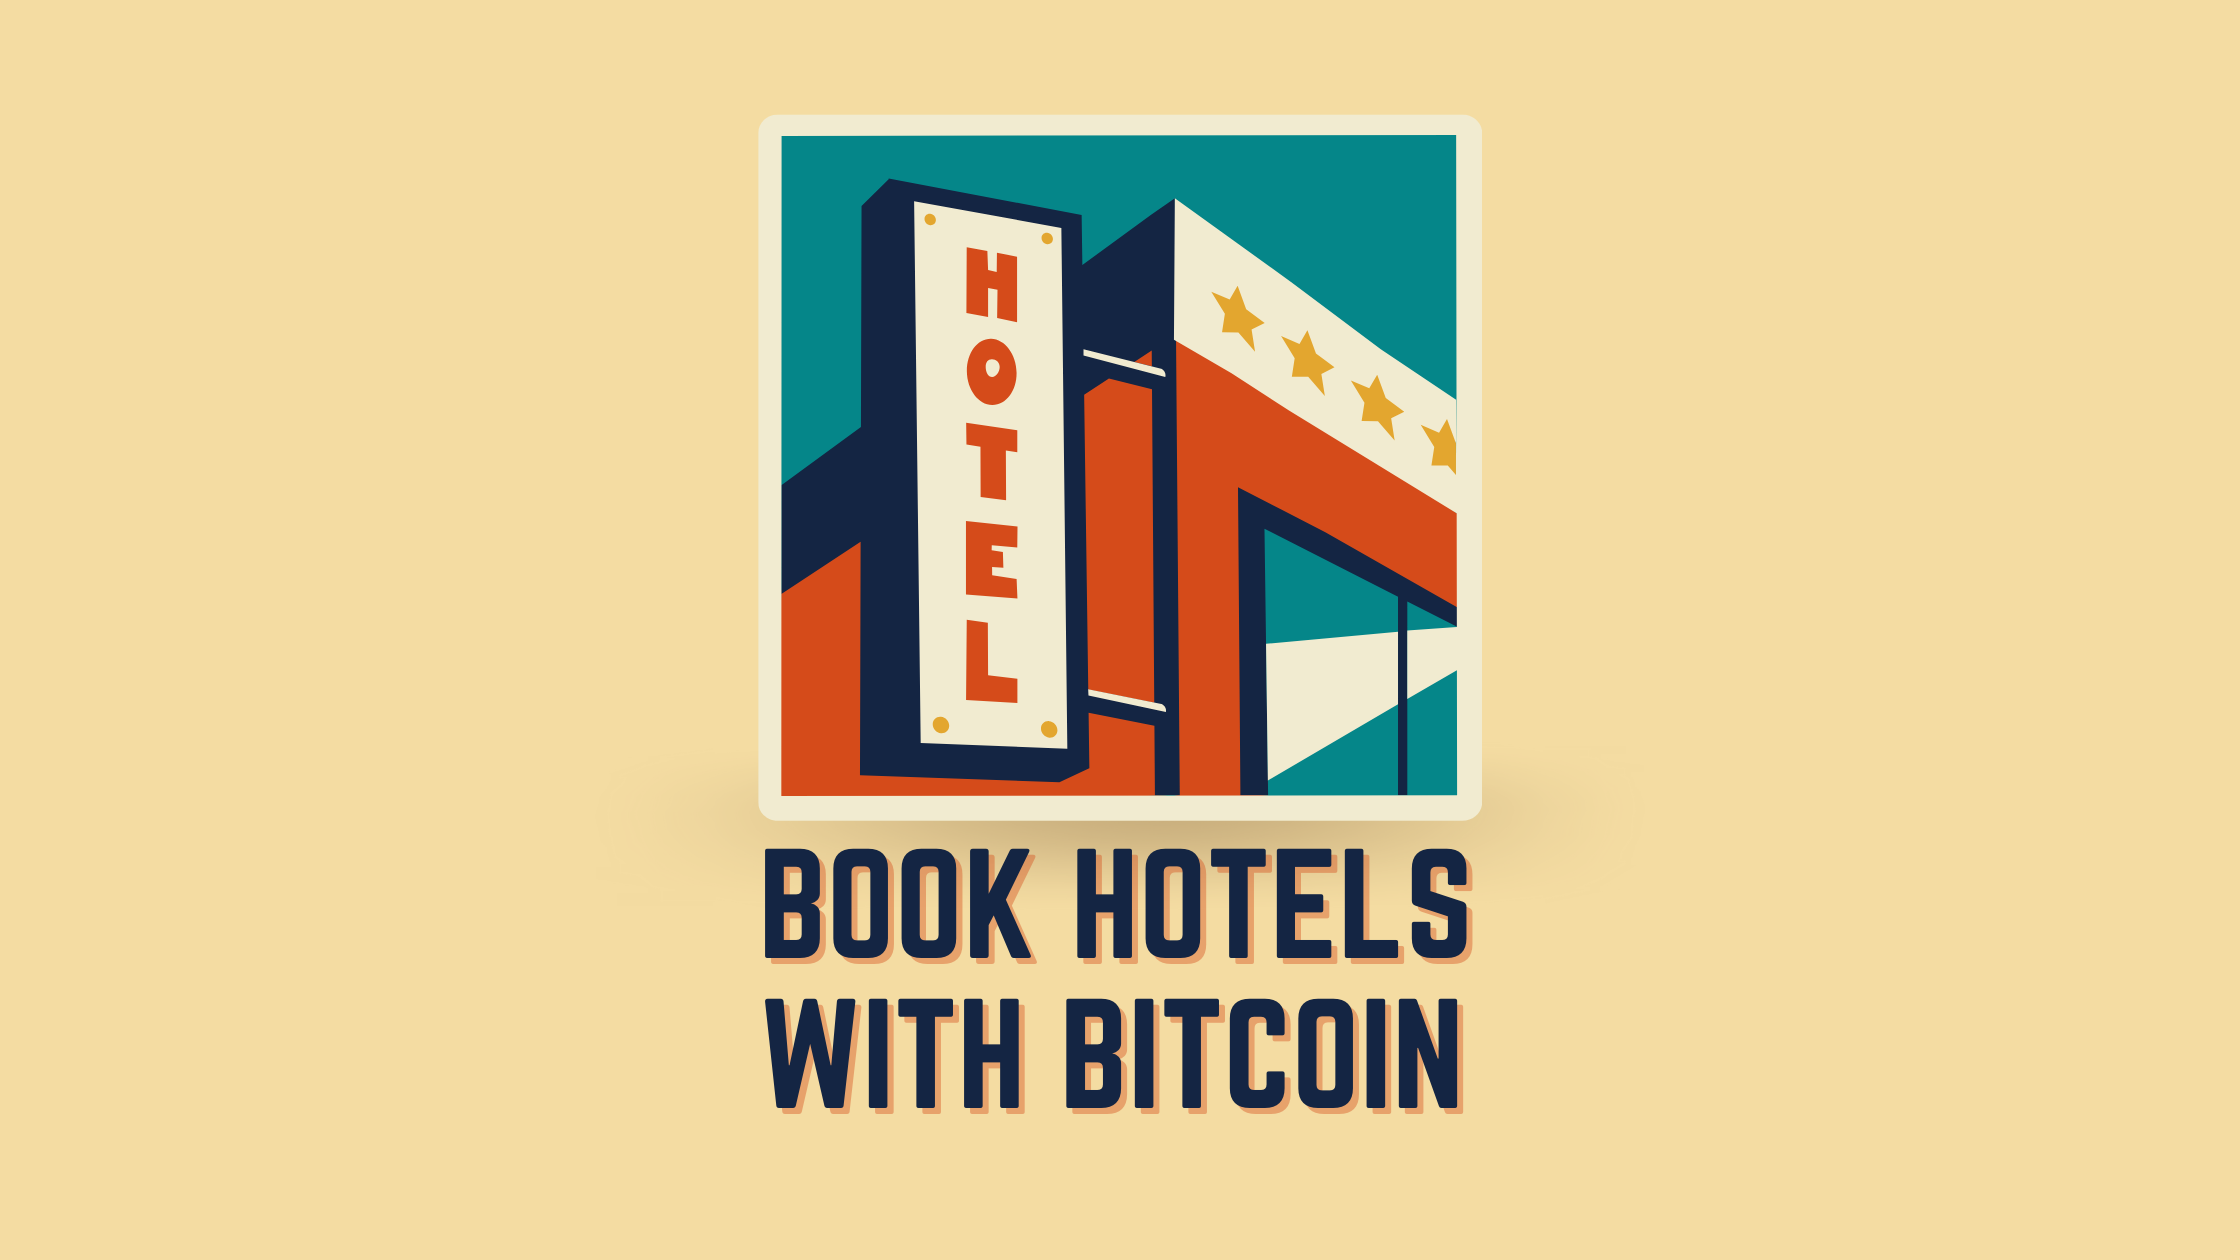 Đặt khách sạn bằng Bitcoin: Lưu trú tại các khách sạn chấp nhận thông tin dữ liệu Blockchain của Crypto Plato. Tìm kiếm dọc. Ái.